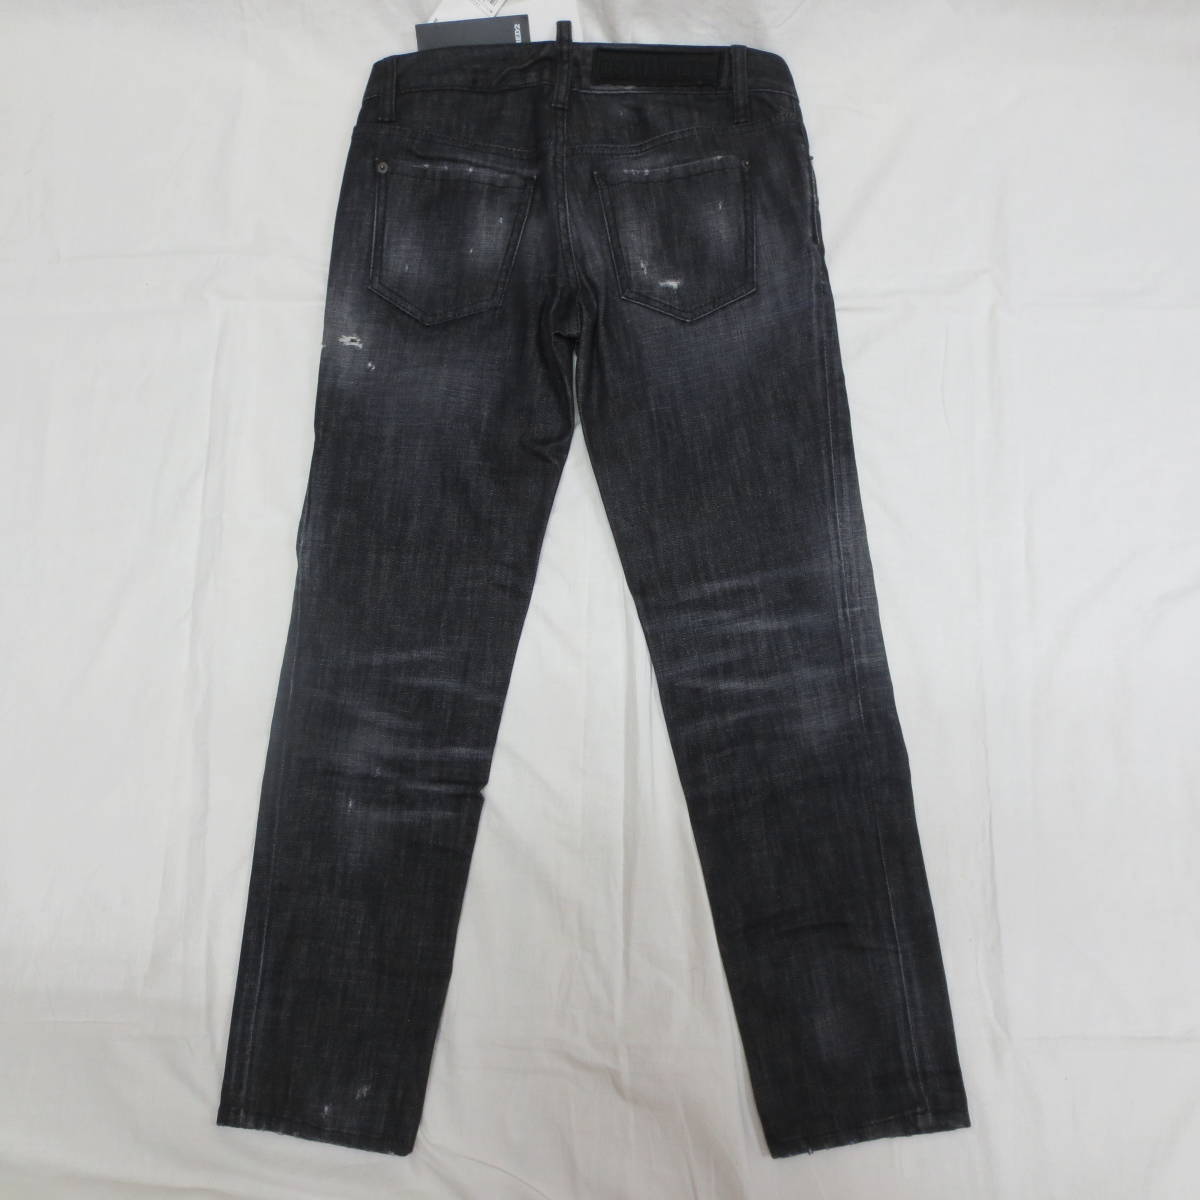 0 Dsquared 2 Cool Girl джинсы авария черный Denim шедевр редкость товар 38 подлинный товар обычная цена 70400 иен 